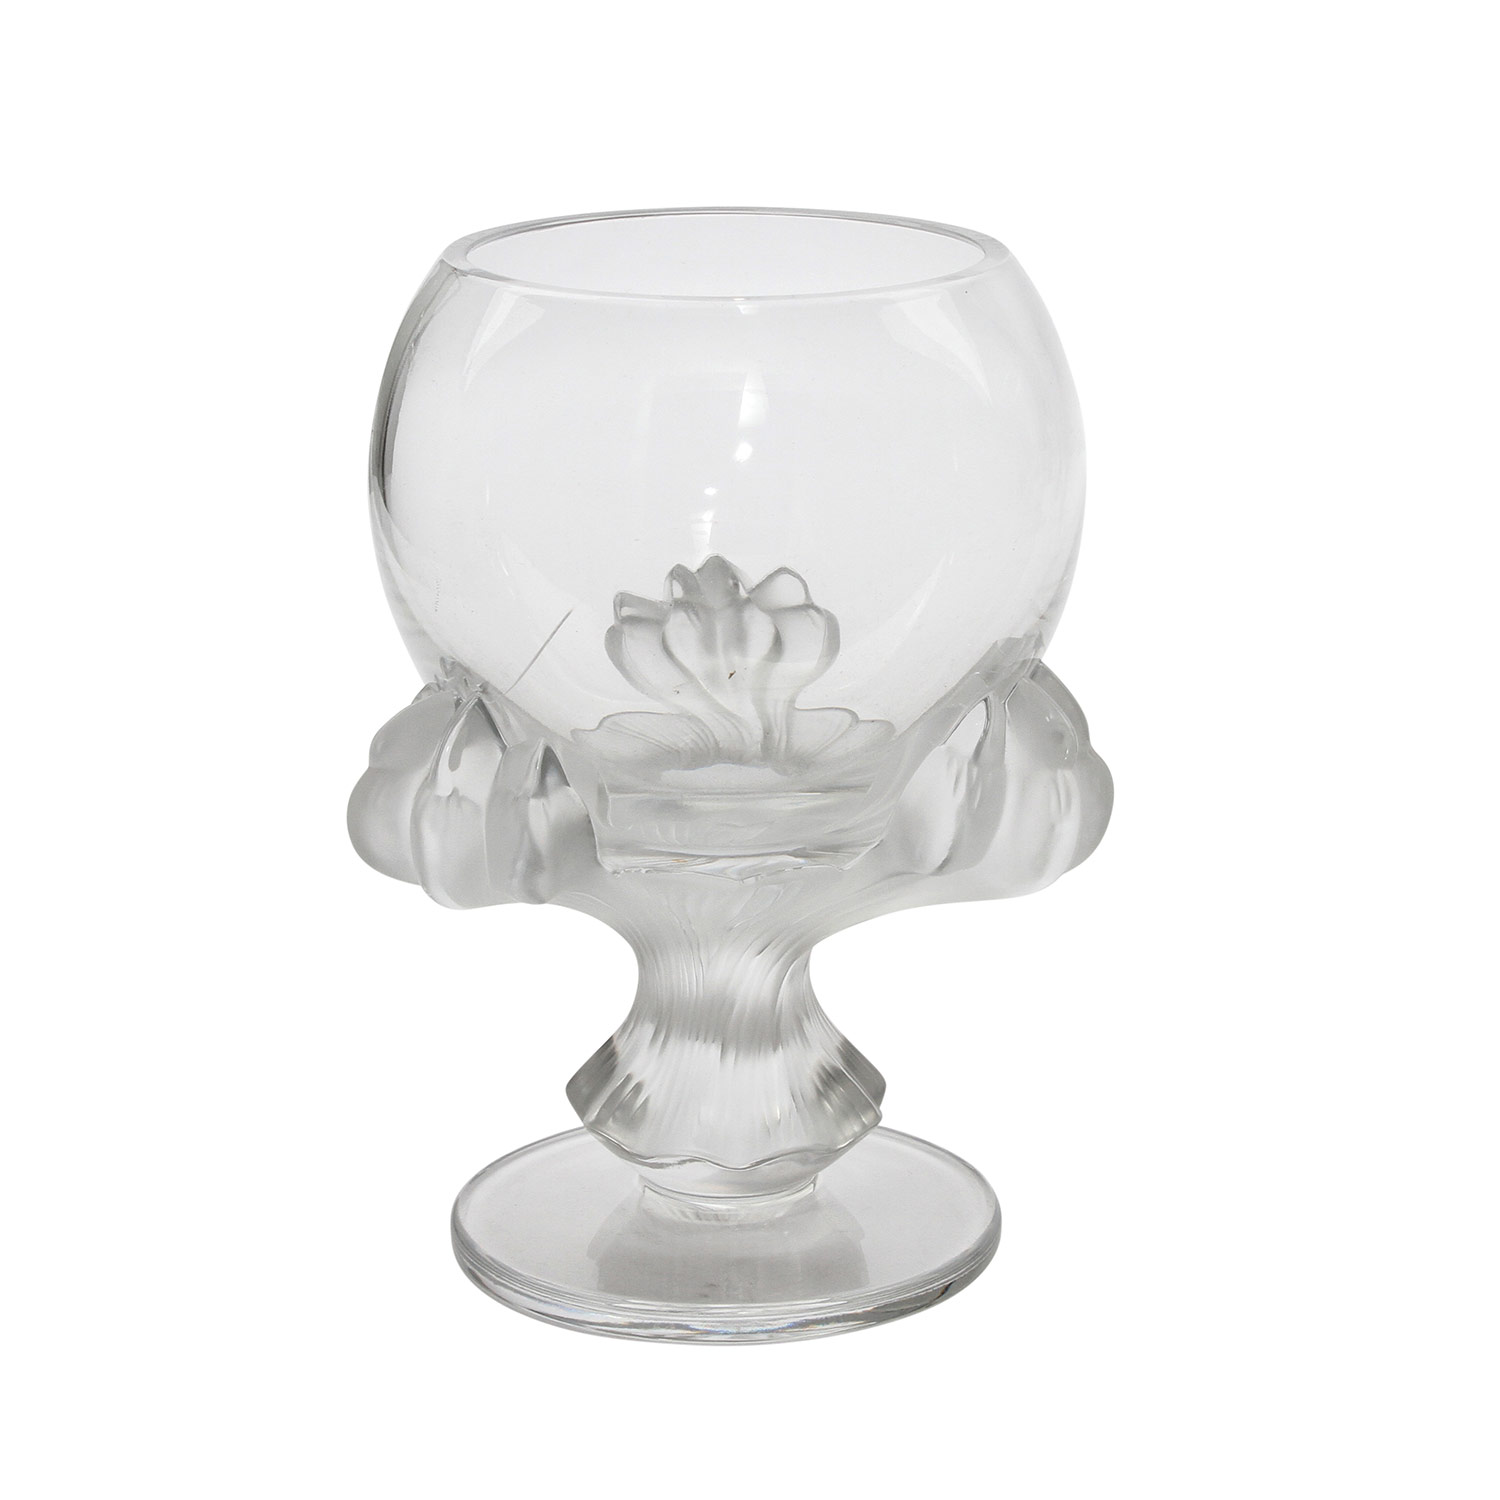 LALIQUE GLASPOKAL Frankreich, farbloses Kristallglas, von drei satinierten Klauenfüßen getragene,